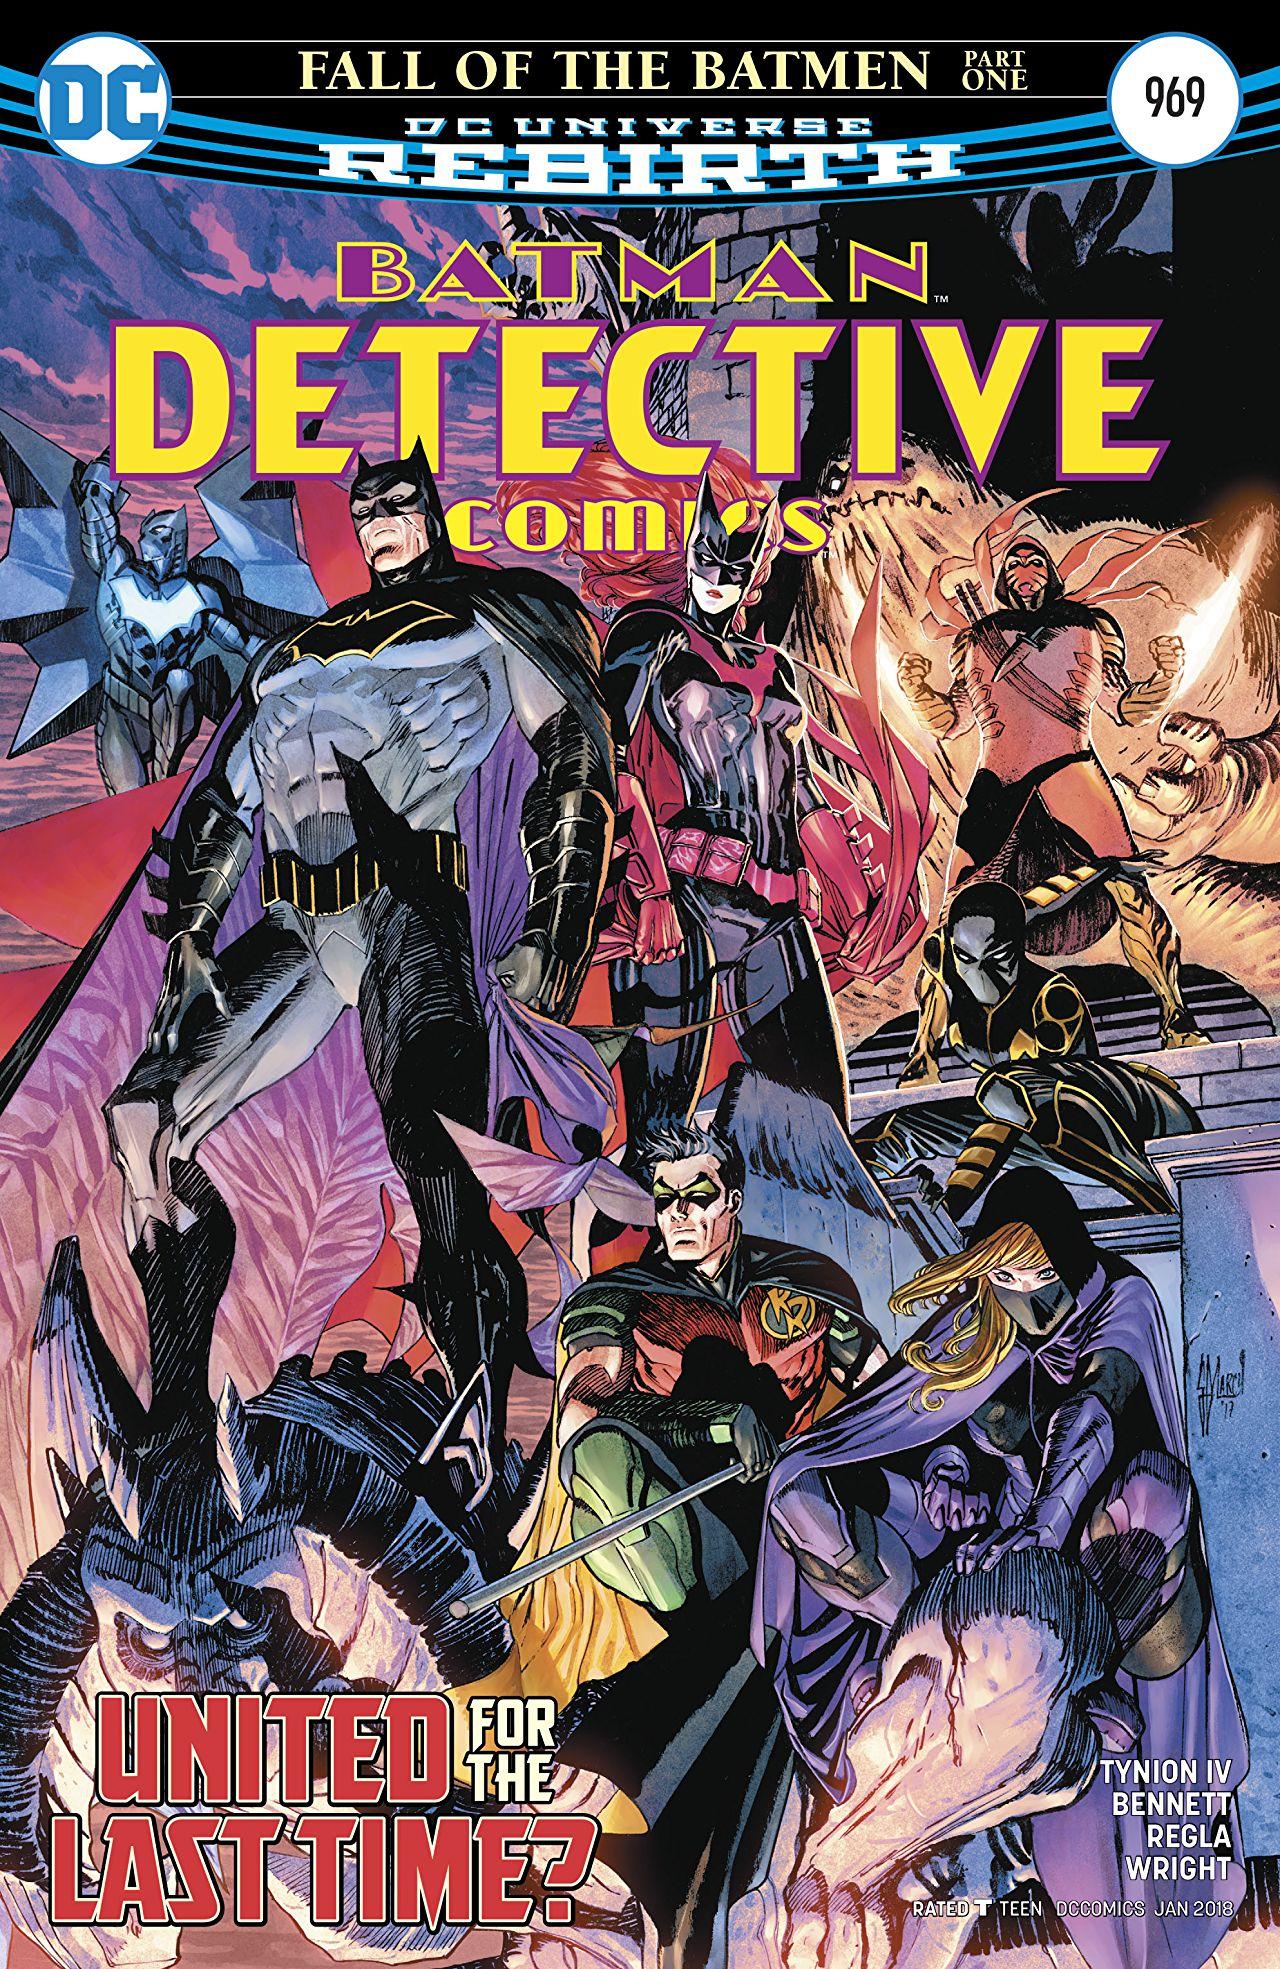 Detective Comics Vol. 1 #969